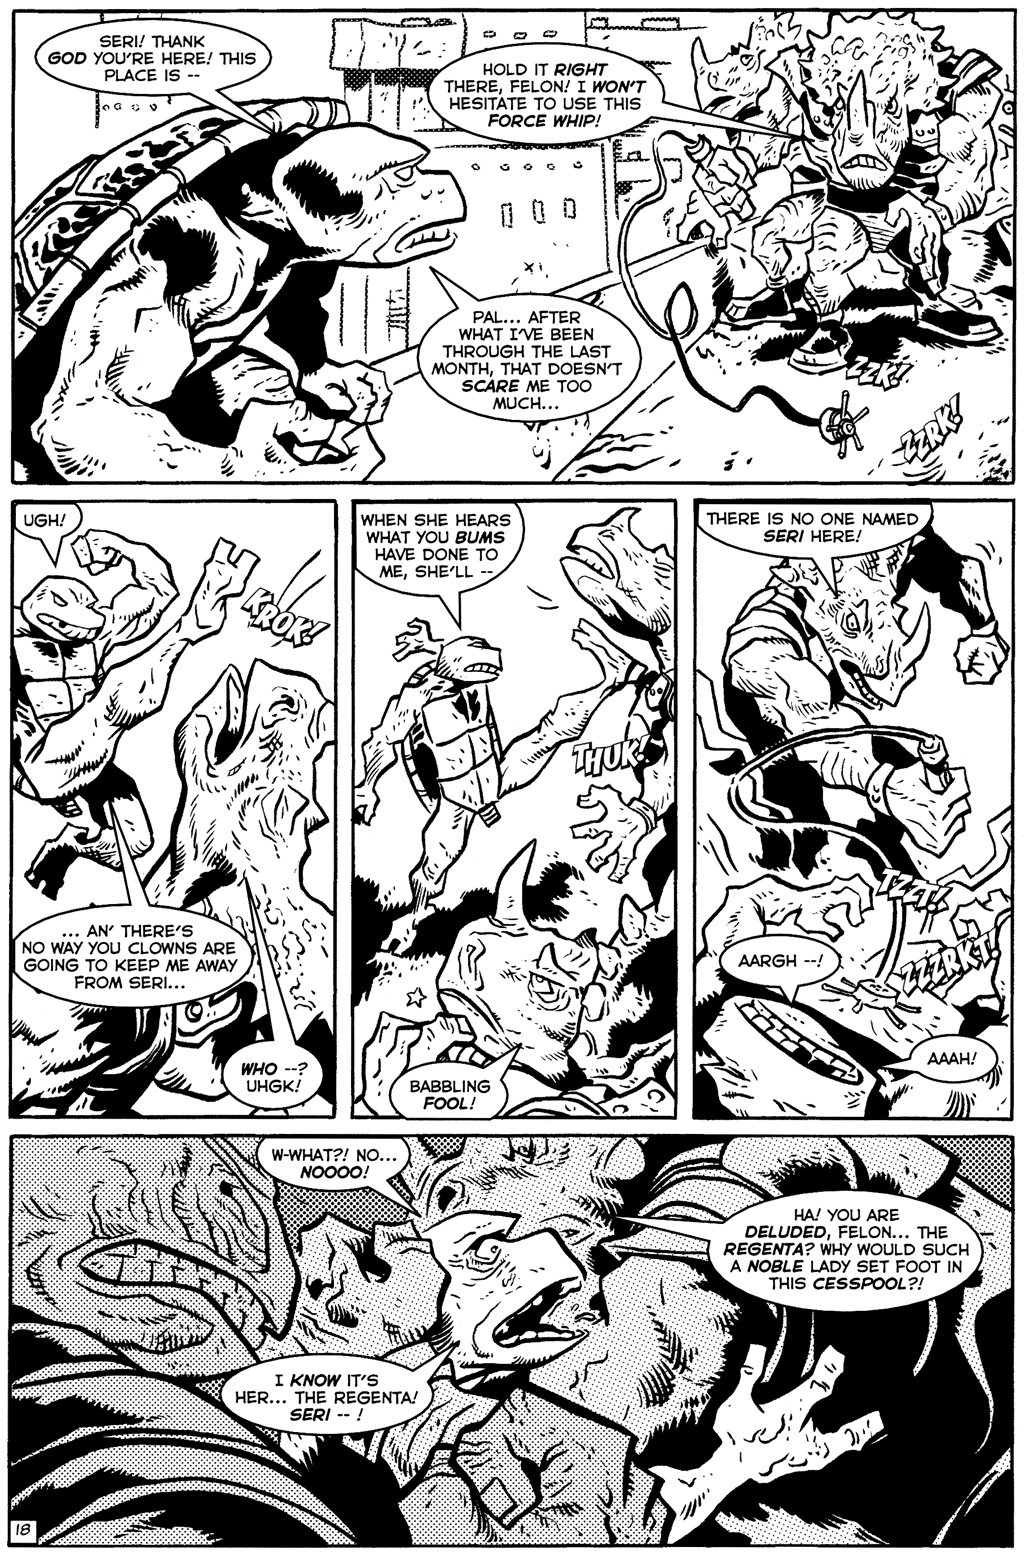 TMNT: Teenage Mutant Ninja Turtles issue 24 - Page 20